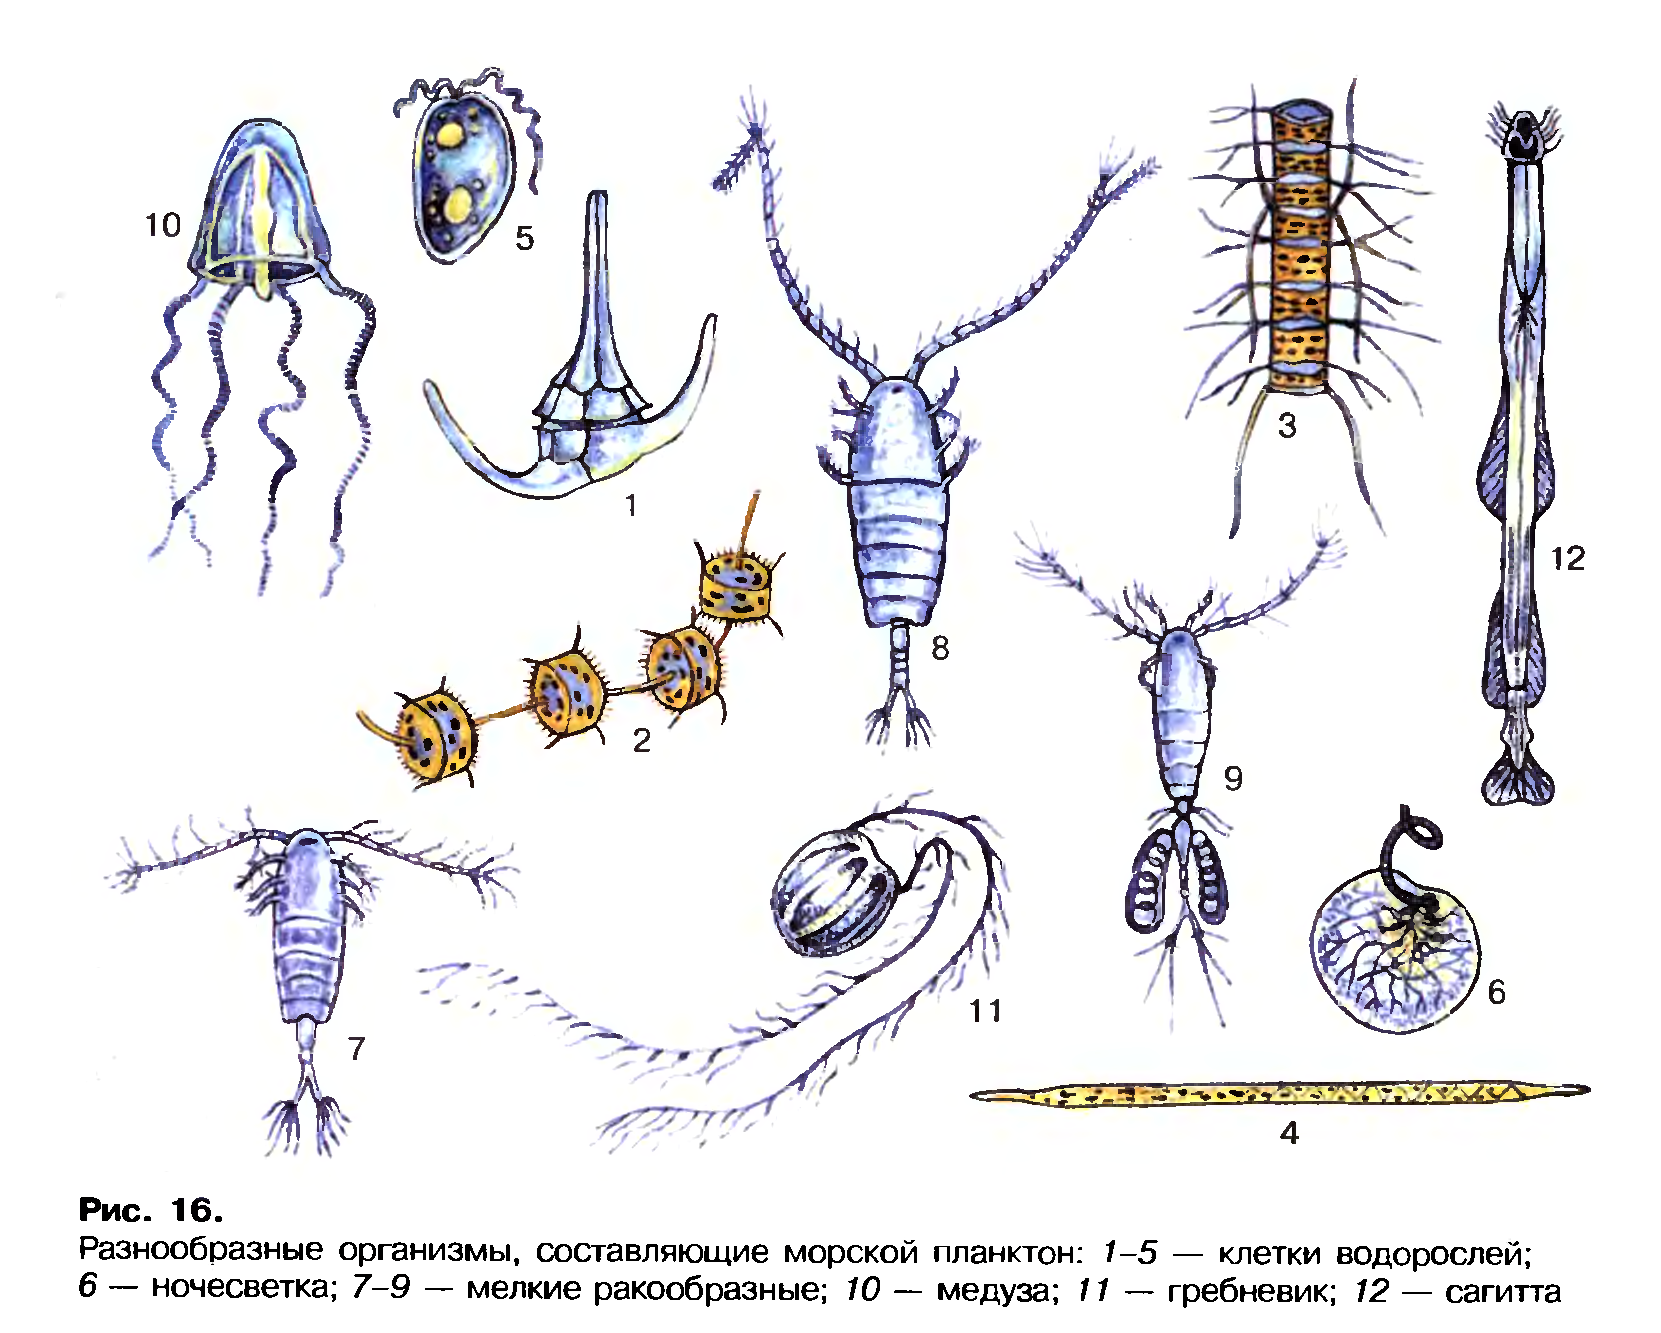 Зоопланктоны ракообразные. Планктон фитопланктон зоопланктон бентос. Планктонные ракообразные представители. Морской планктон рачок. Кишечник беспозвоночные